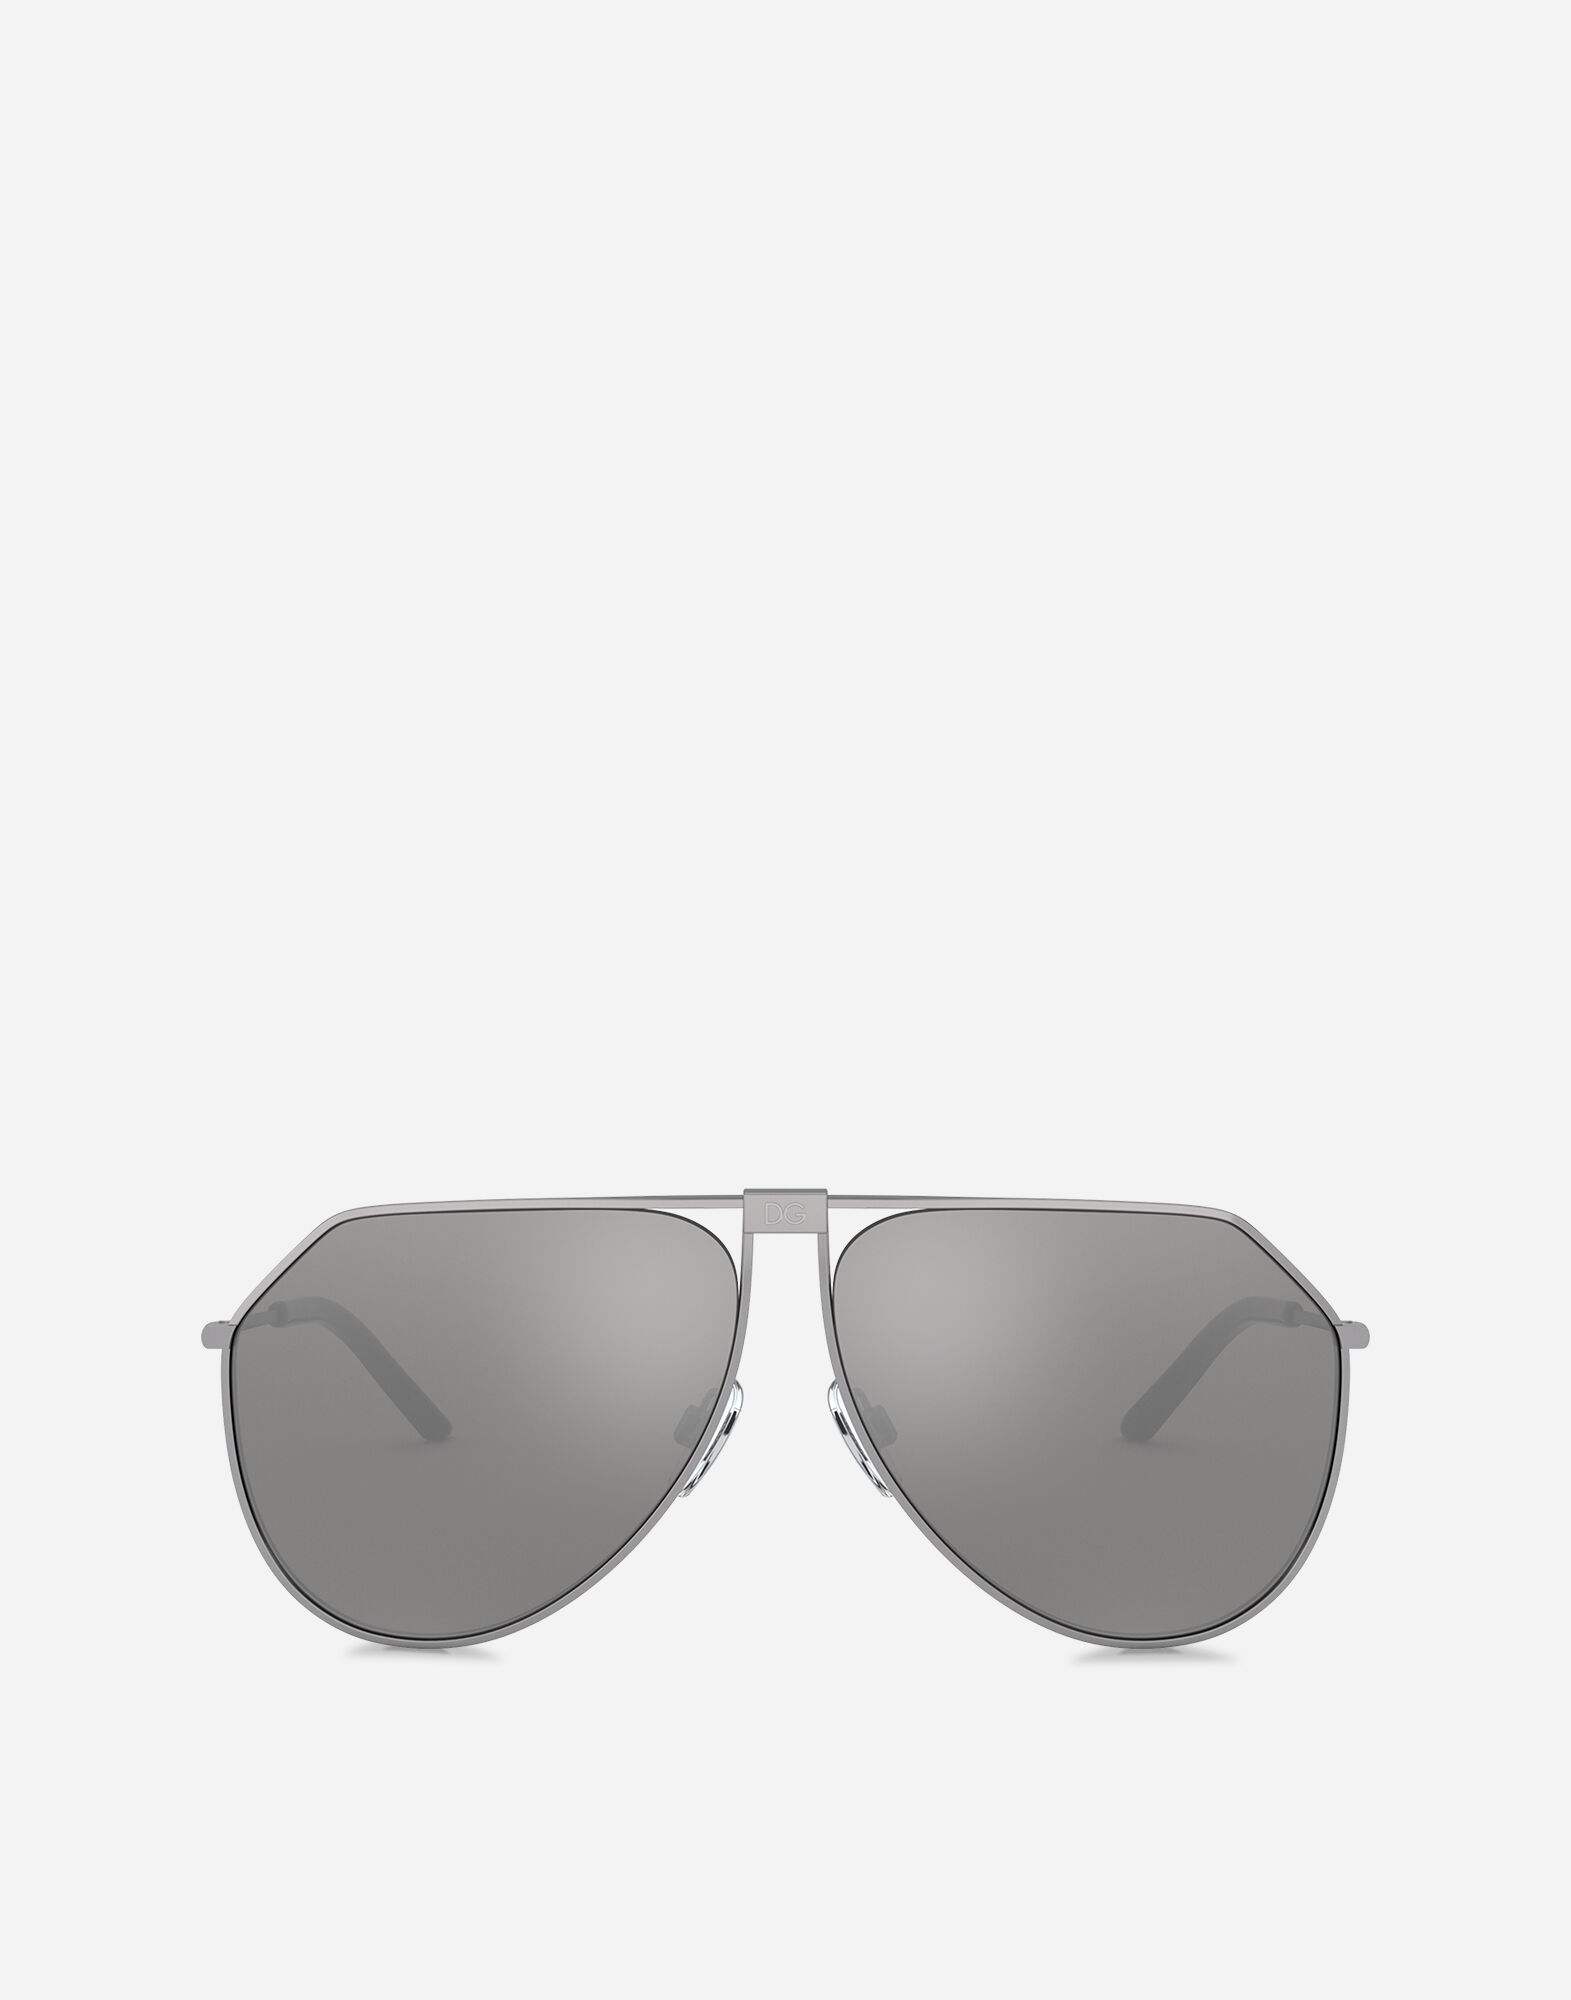 Slim sunglasses in GUN METAL for | Dolce&Gabbana® US